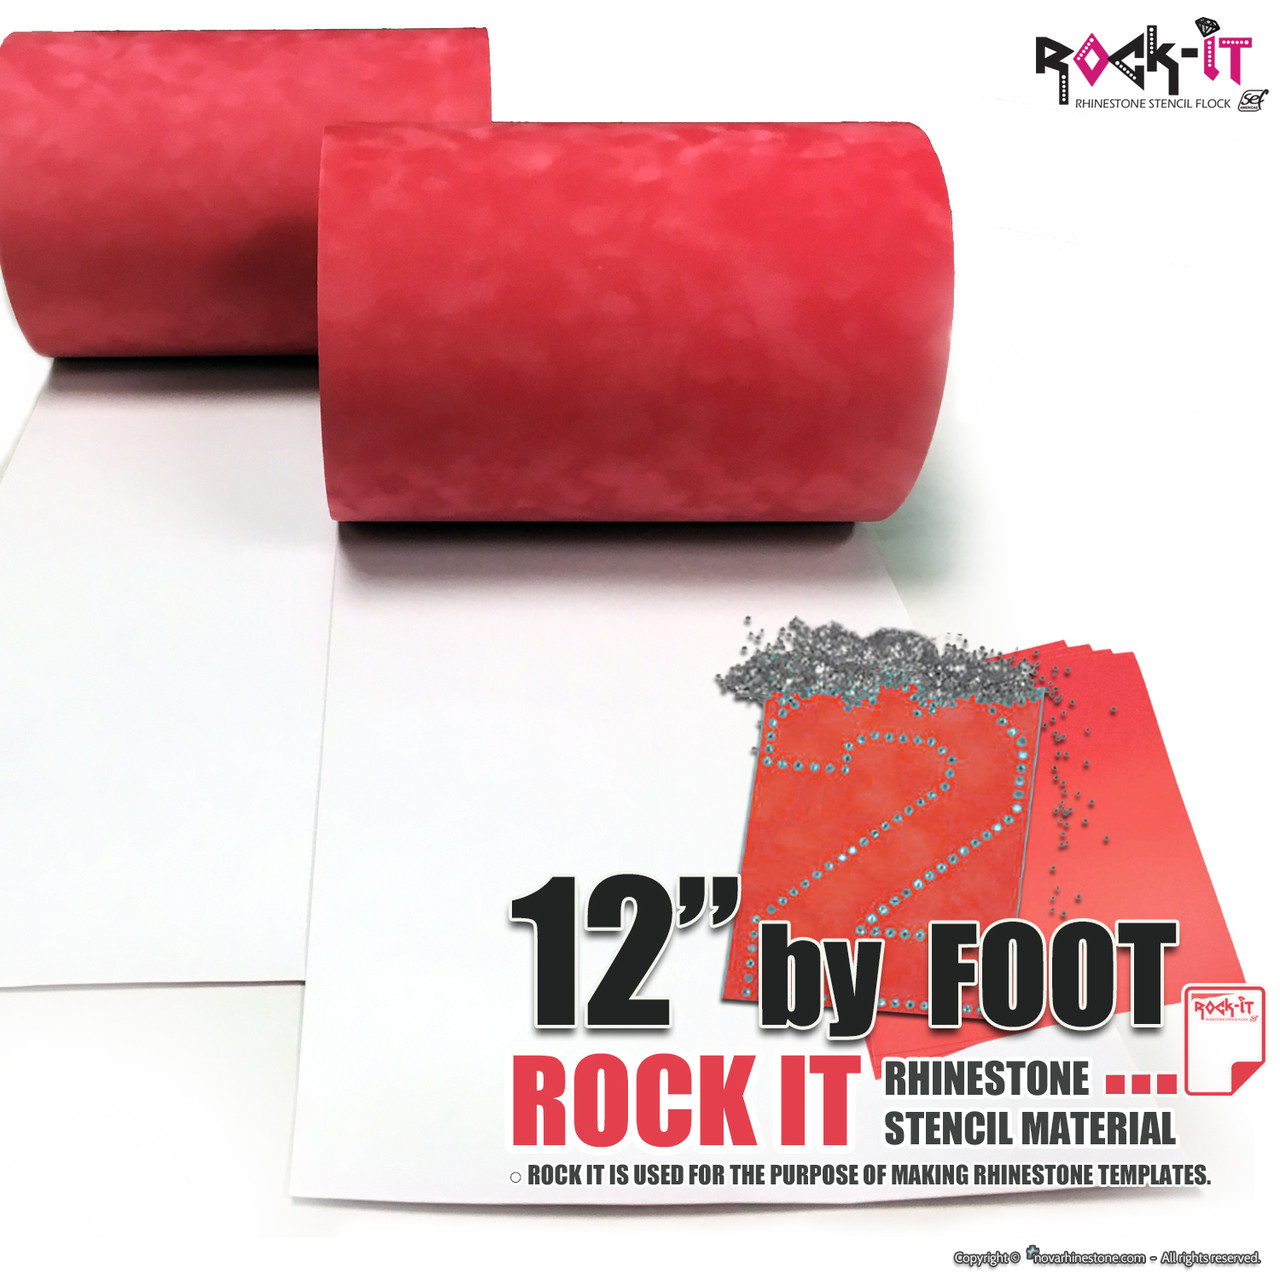 Rock-It Rhinestone Stencil Flock - 12 wide by Foot